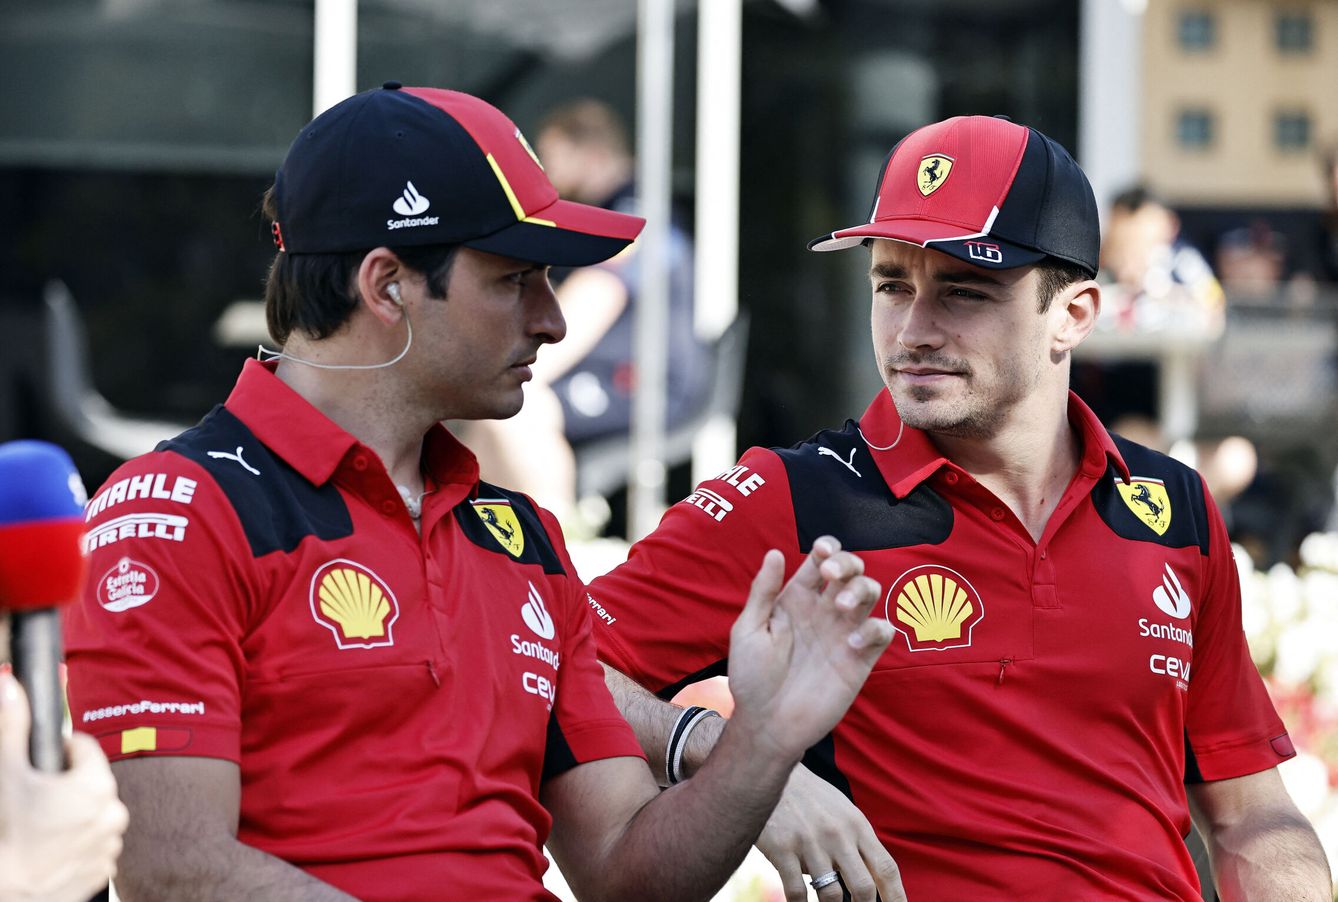 Vasseur trata de que tanto Sainz como Leclerc, tengan la menor exposición posible, pero igual podría ser un error de cálculo. (Reuters/ Hamad I Mohammed)